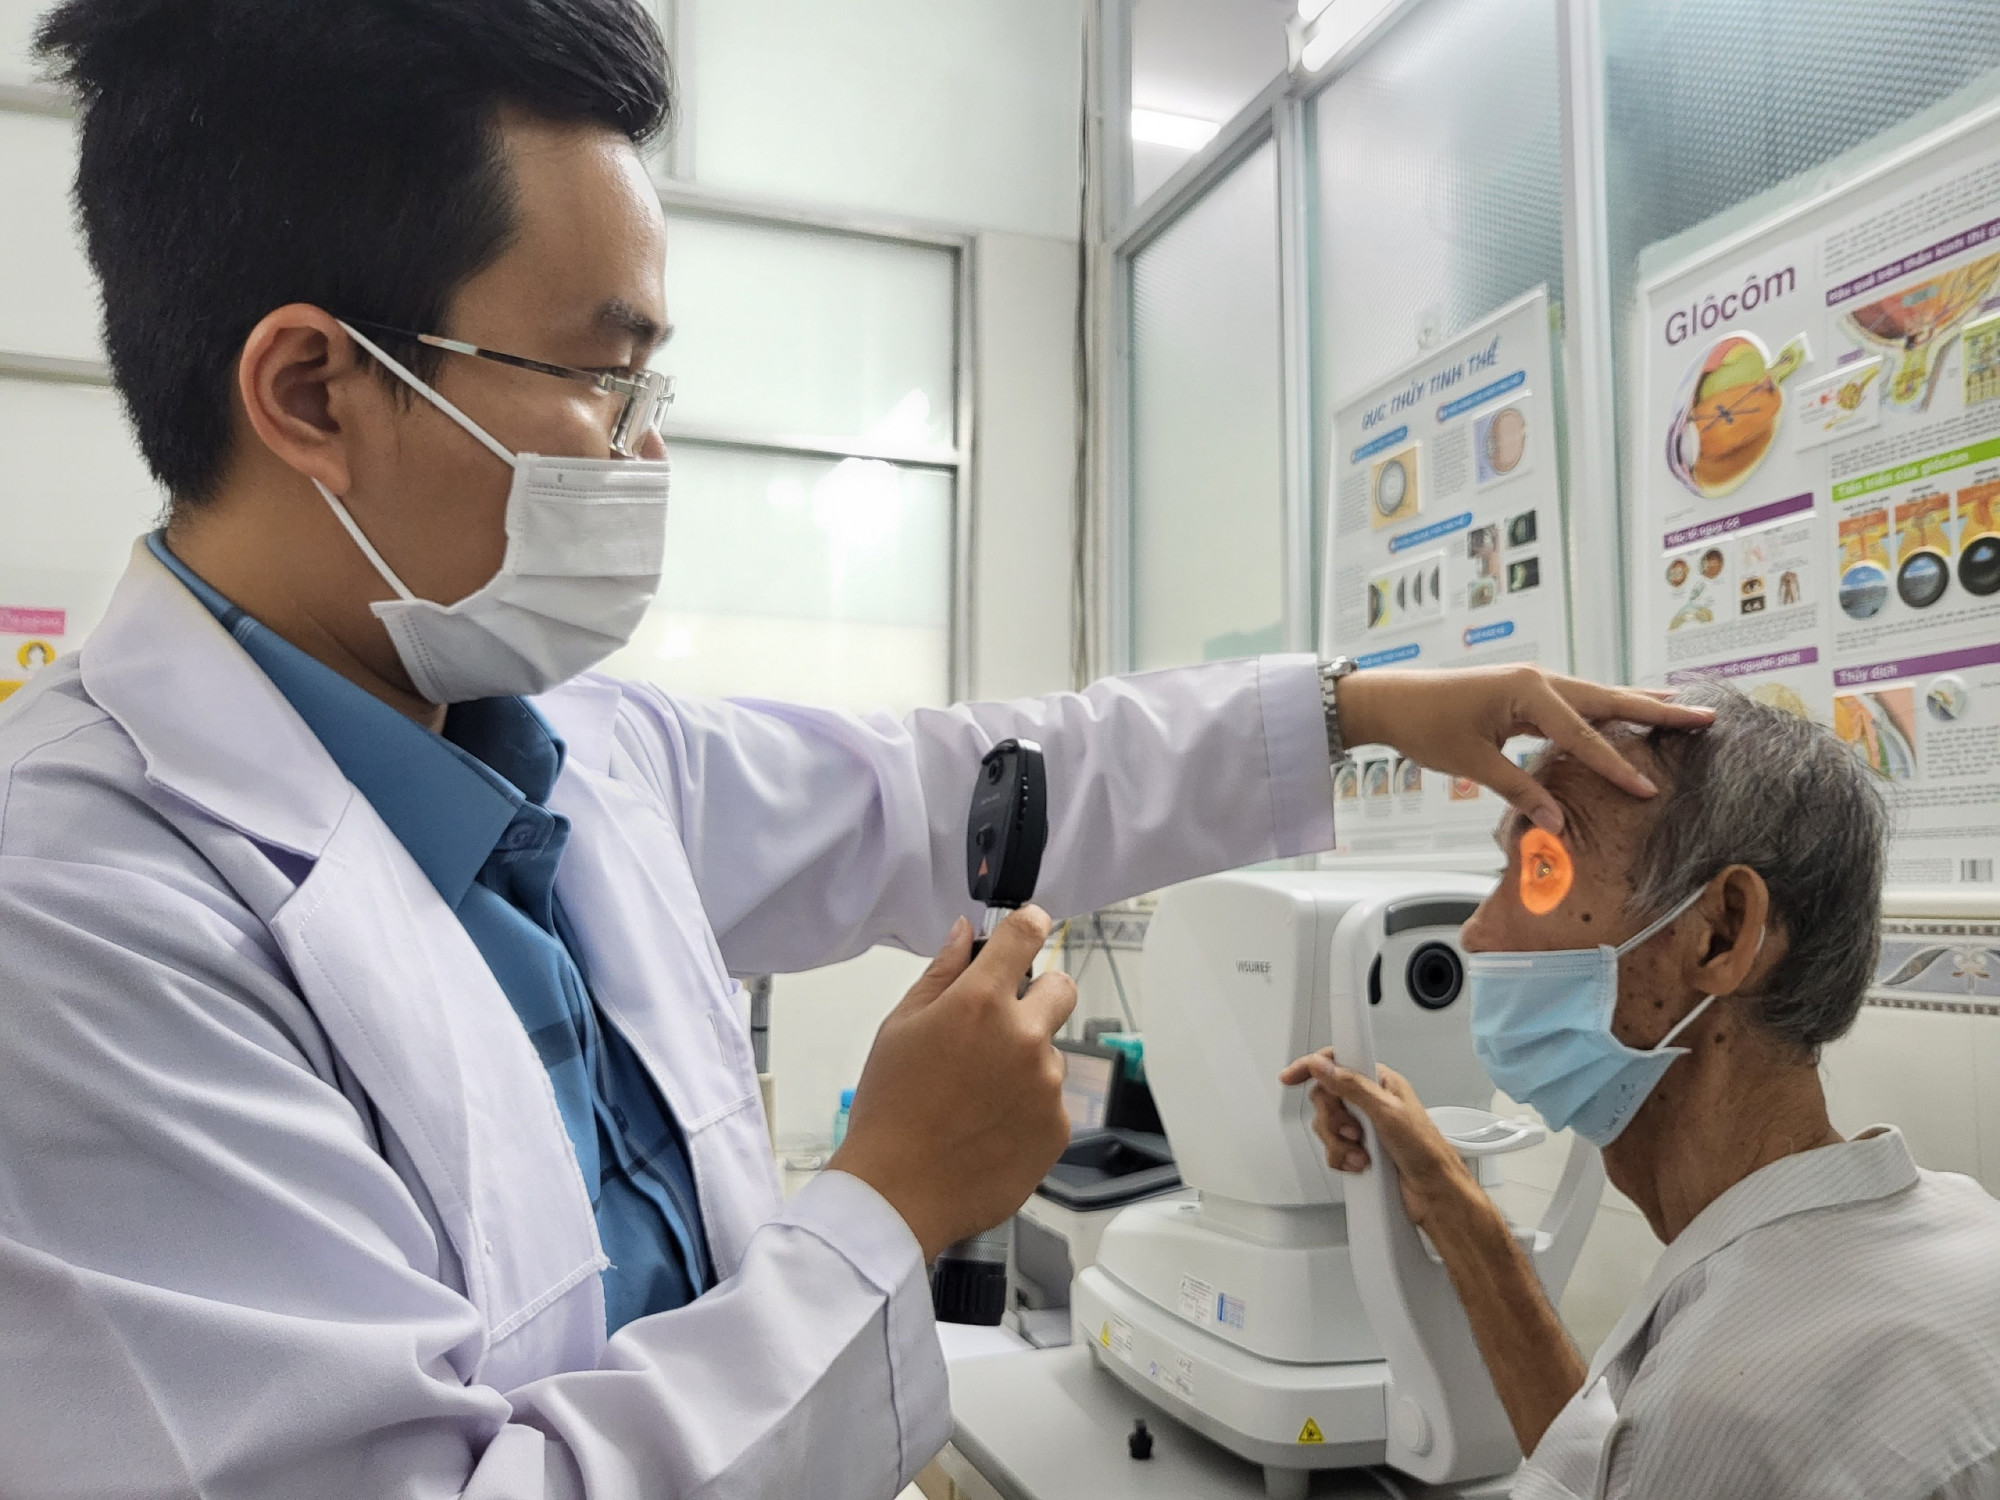 Bác sĩ Quang kiểm tra mắt cho ông S., mắt trái của ông đã mù hoàn toàn